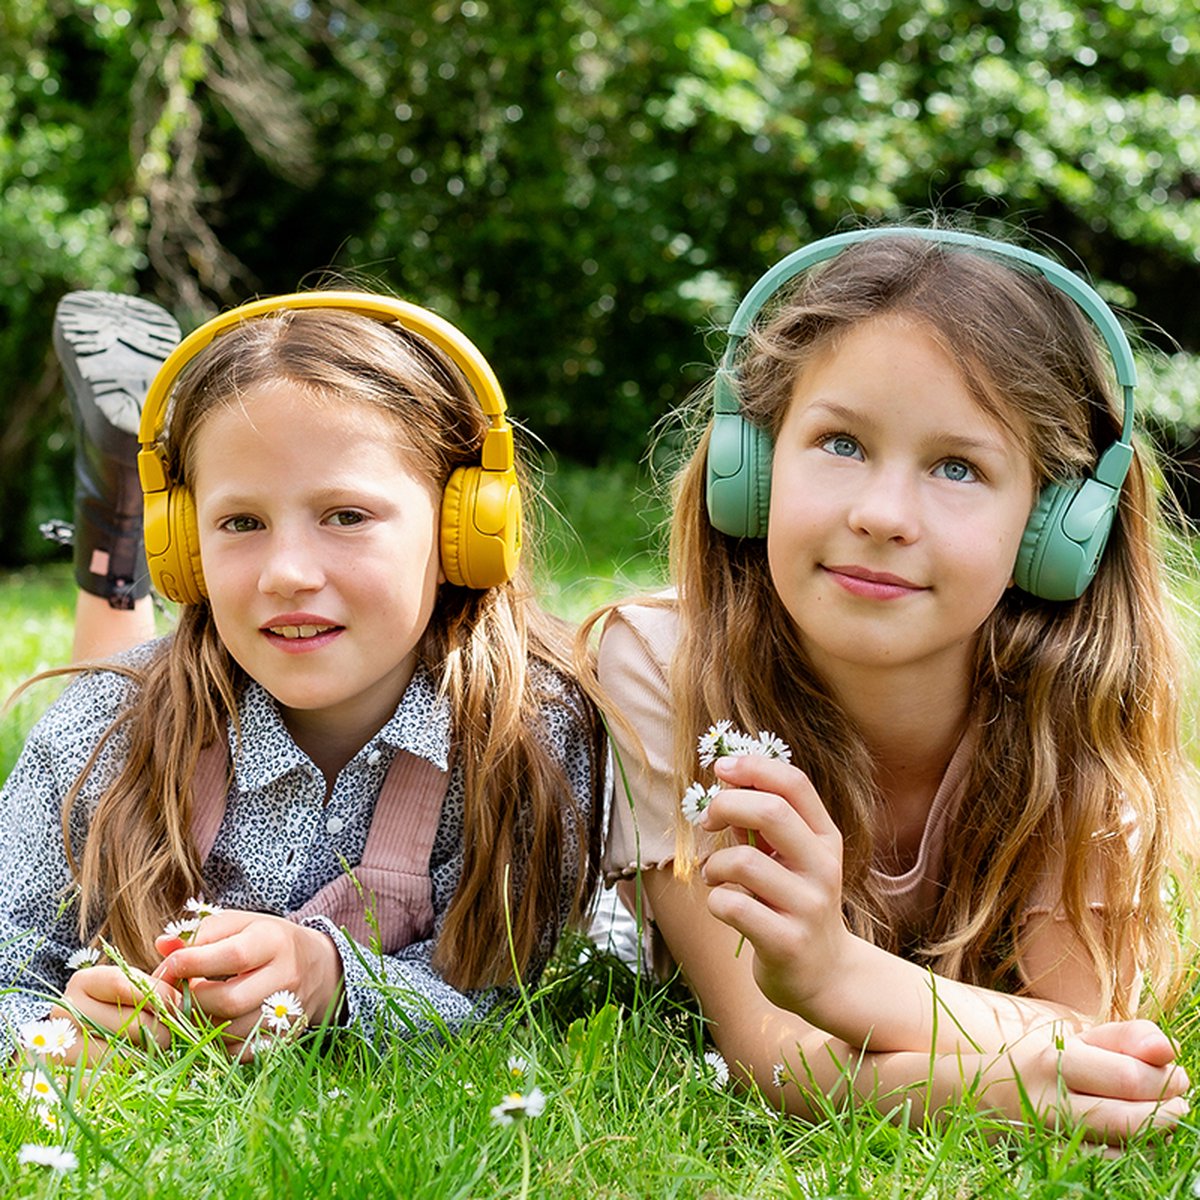 Écouteurs sans fil pour enfants POGS 'The Gecko' - Vert